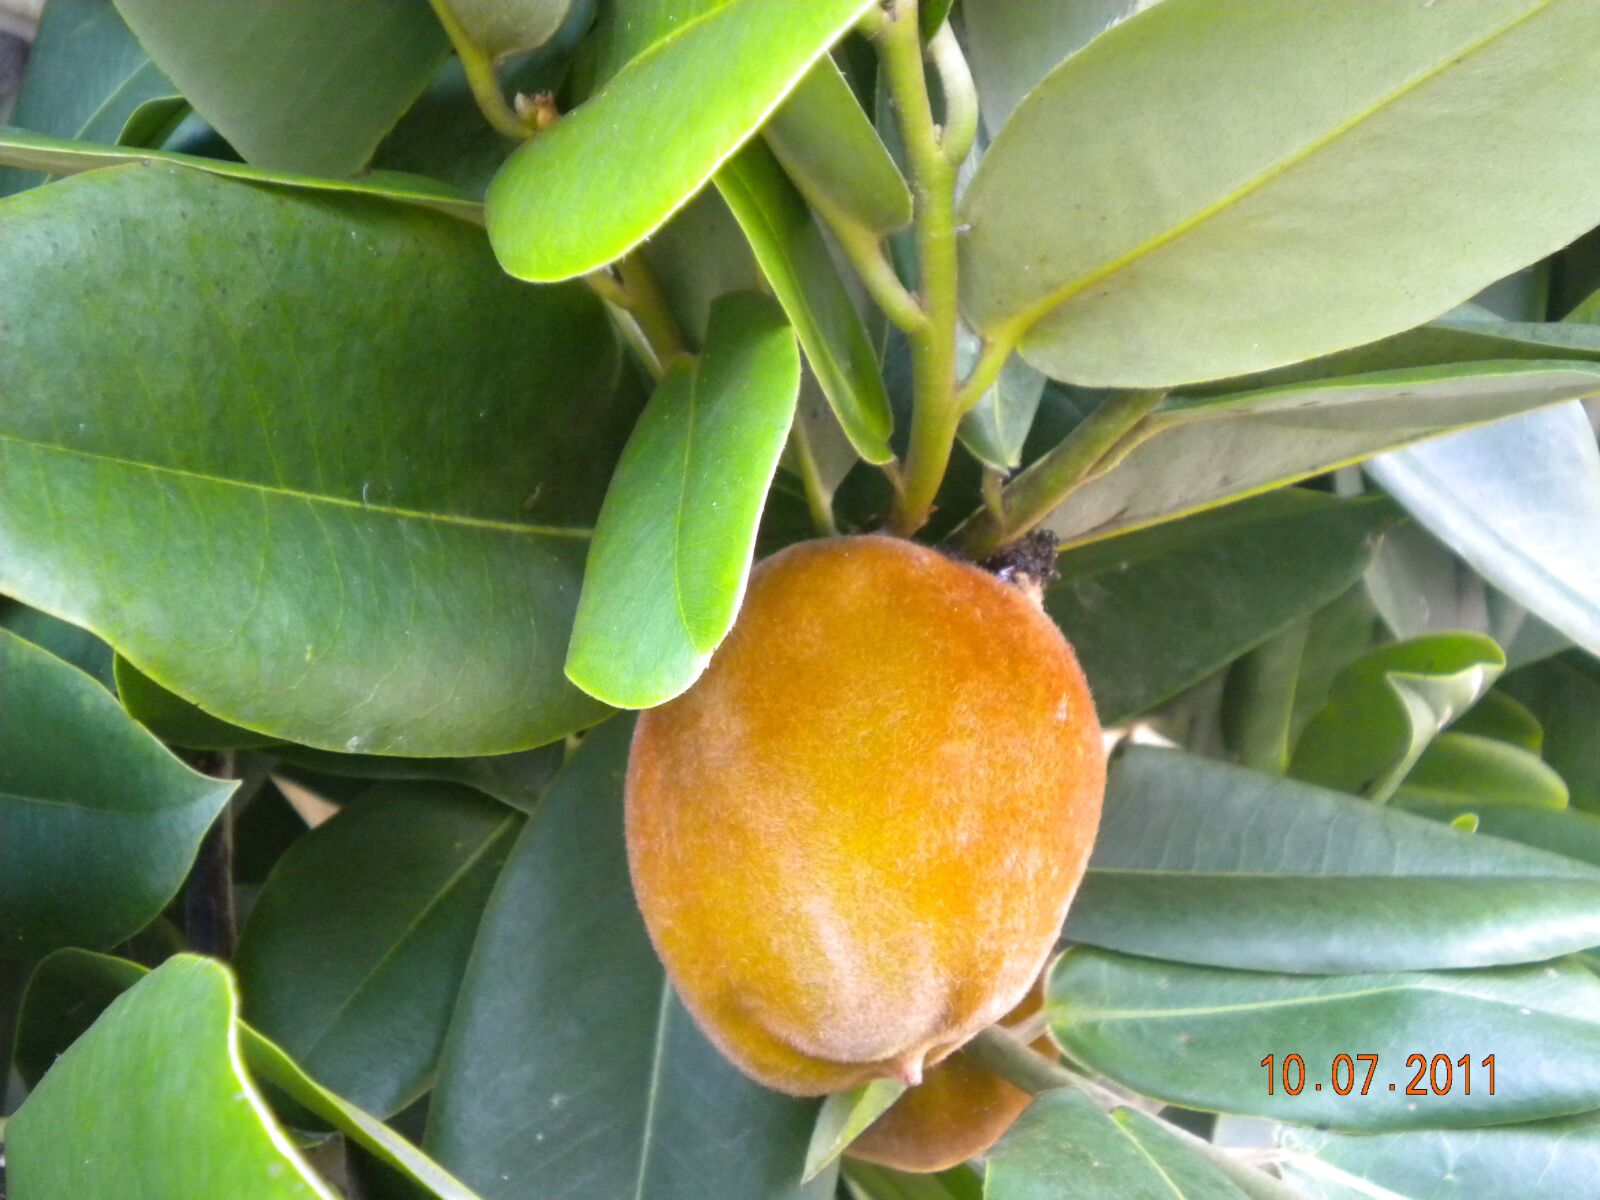 Nikon Coolpix S220 sample photo. Fruit, tropical, malaysia photography